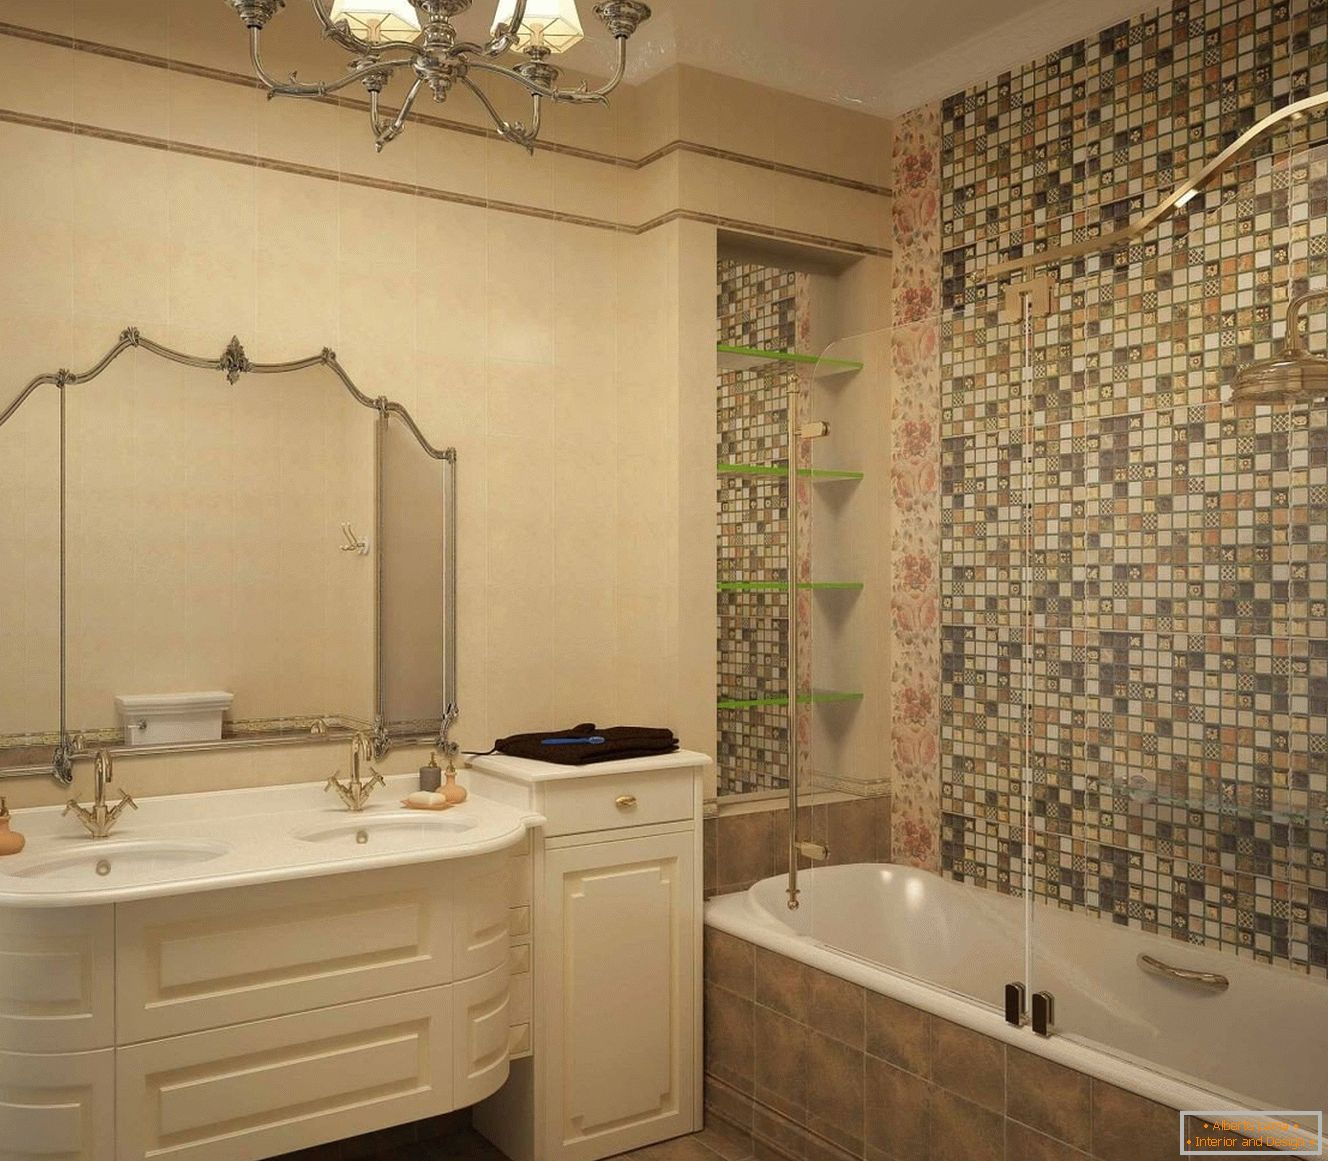 Intérieur de la salle de bain dans un style classique